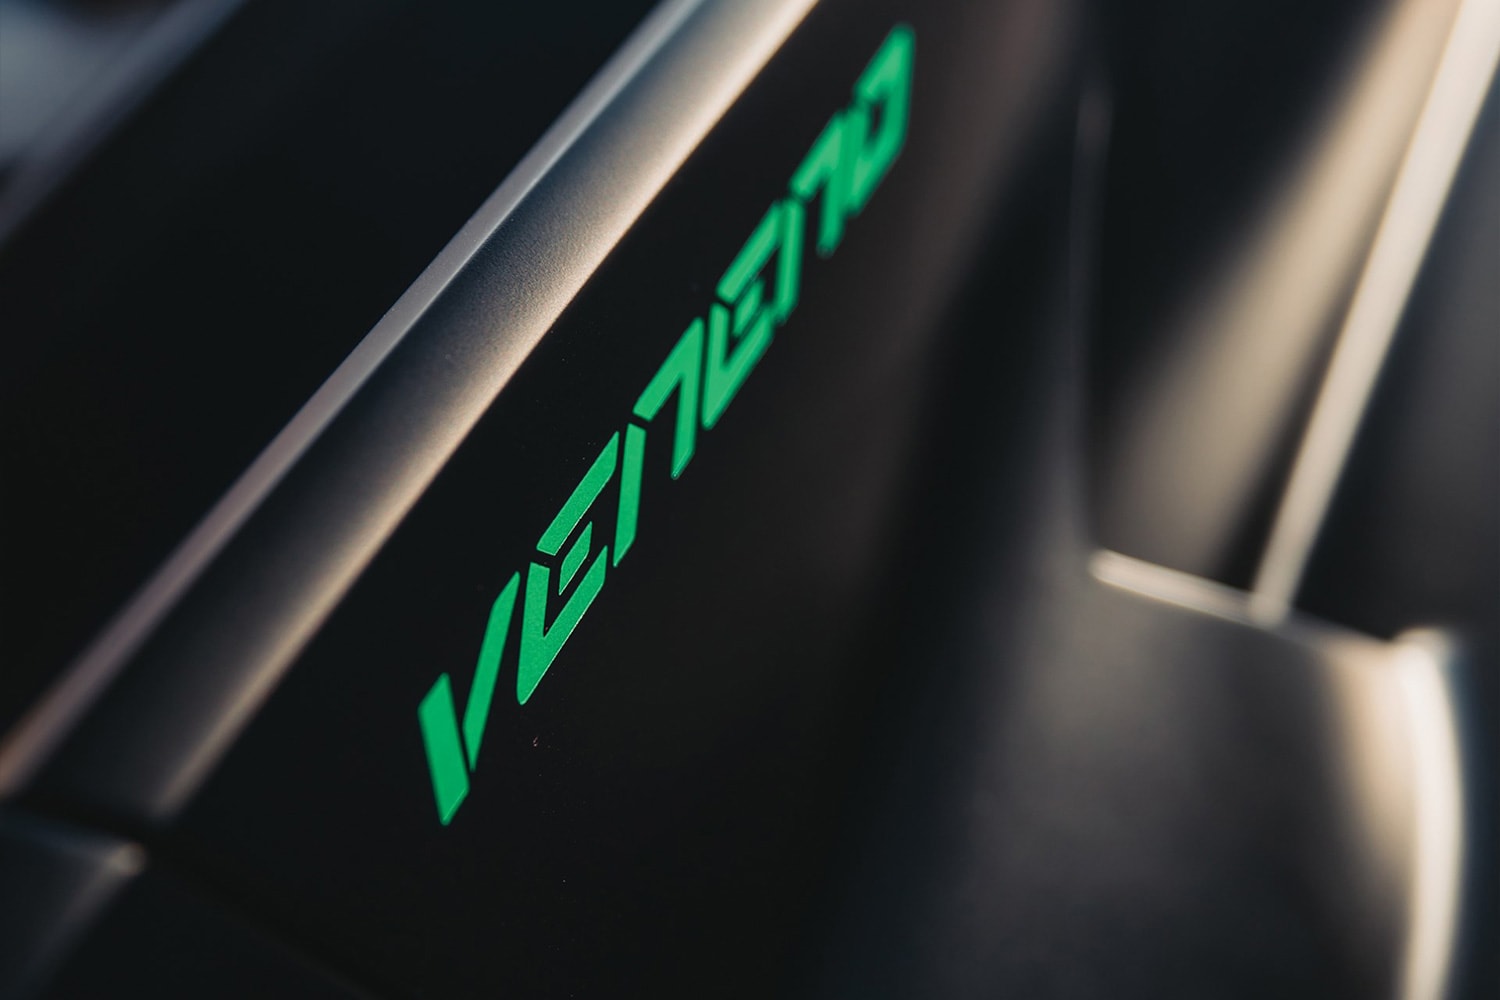 ランボルギーニ・ヴェネーノ・ロードスター 世界限定9台の Lamborghini Veneno Roadster がオークションに登場 2015 Lamborghini Veneno Roadster Auction RM Sotheby's supercar hypercar one of 9 built €4,500,000 - €5,500,000 paris 6.5 litre v-12